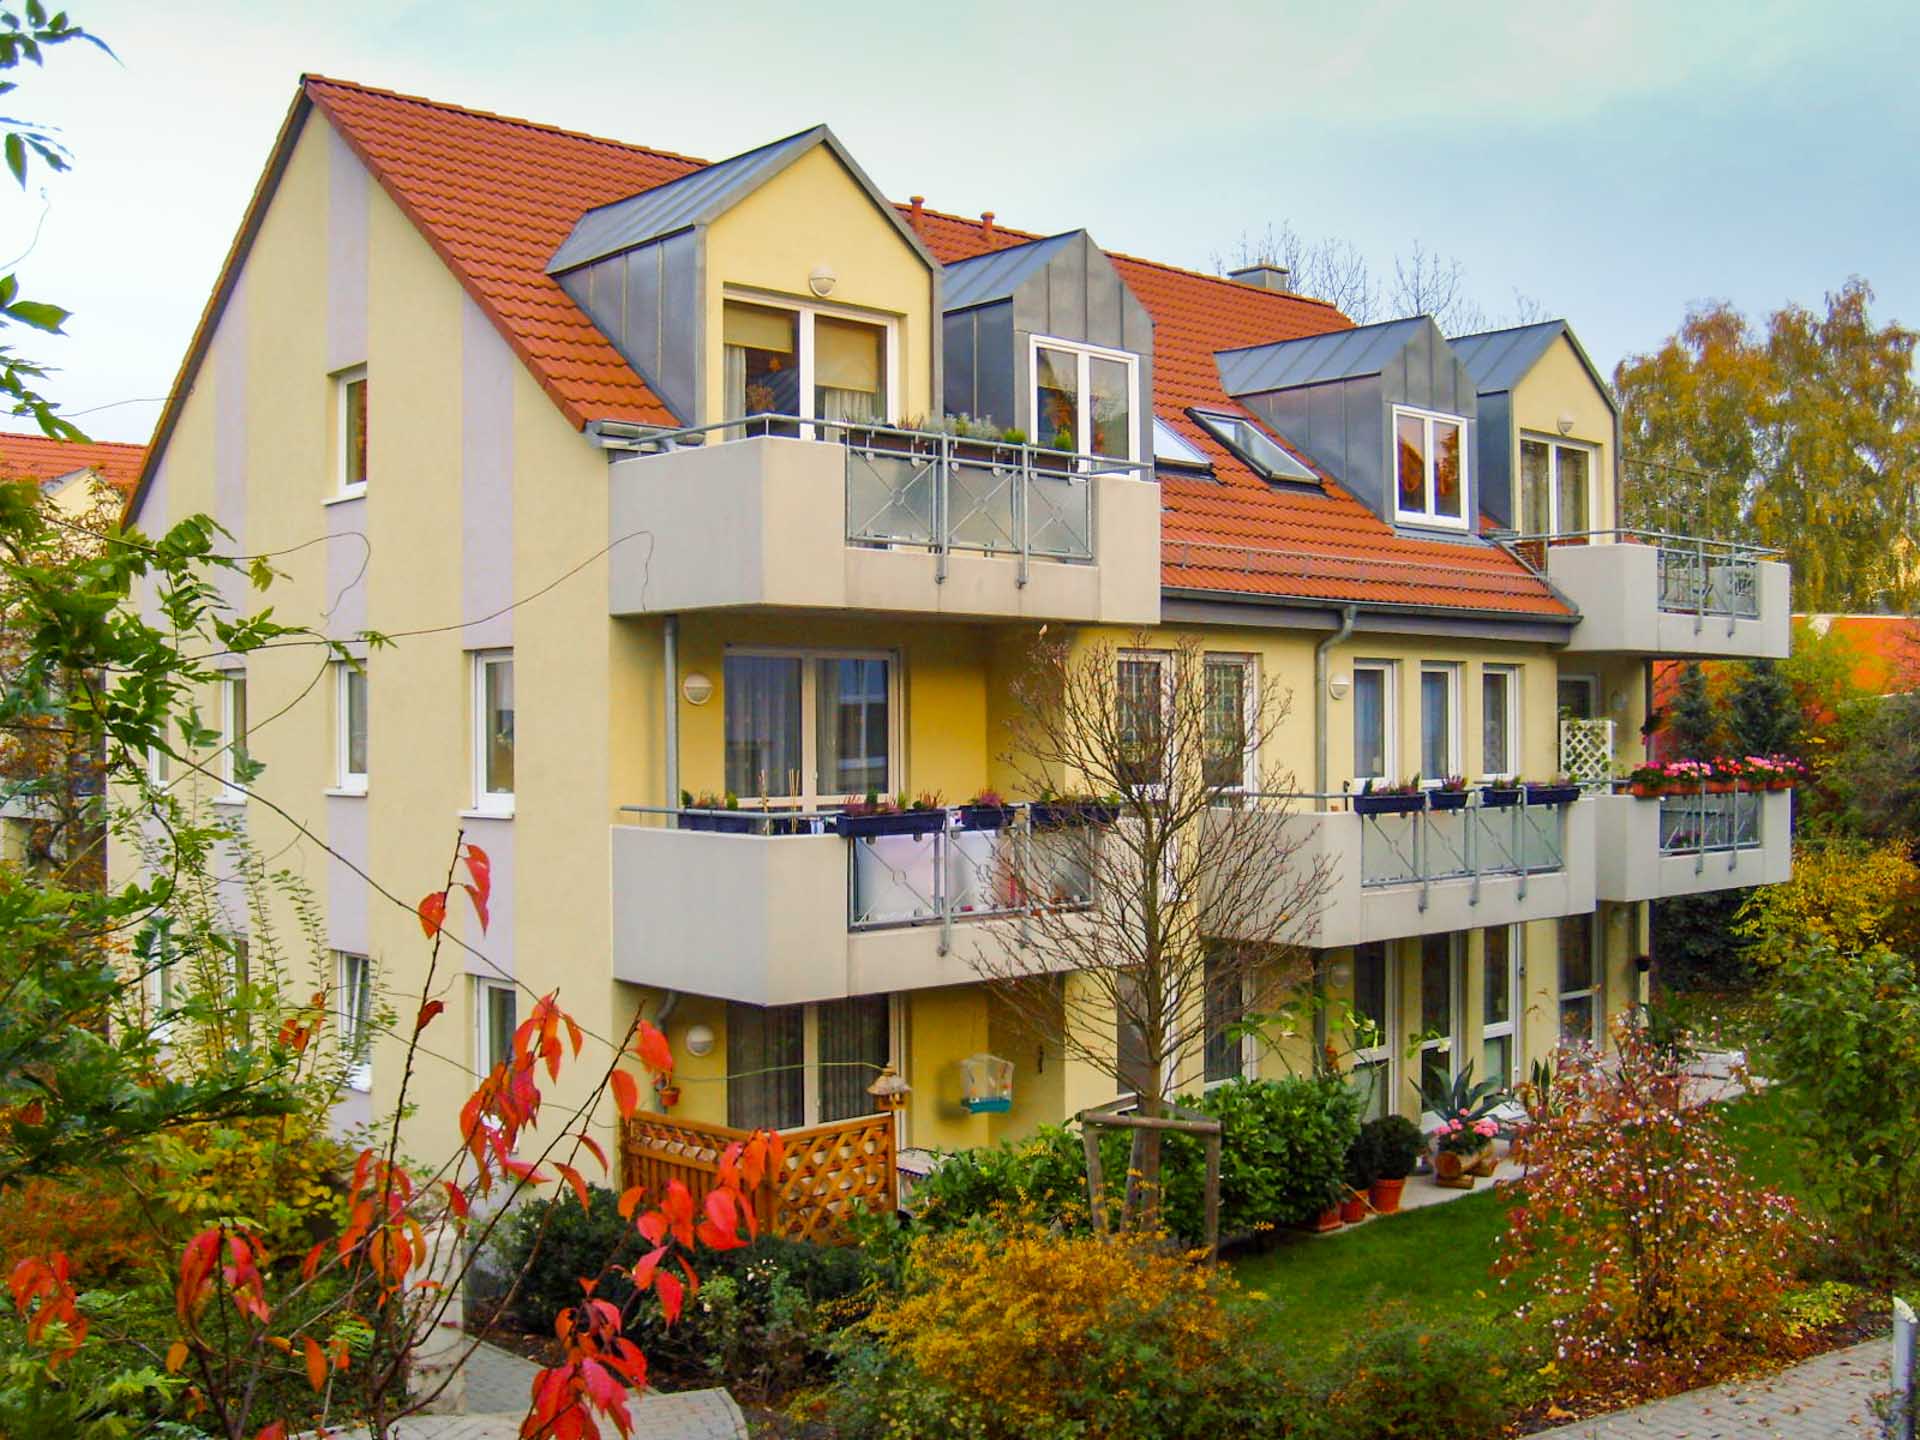 Unser charmantes Neubauprojekt in der Lettiner Straße bietet große Balkone und schöne Gartenanteile. Hier lasst es sich der Tag entspannt ausklingen.